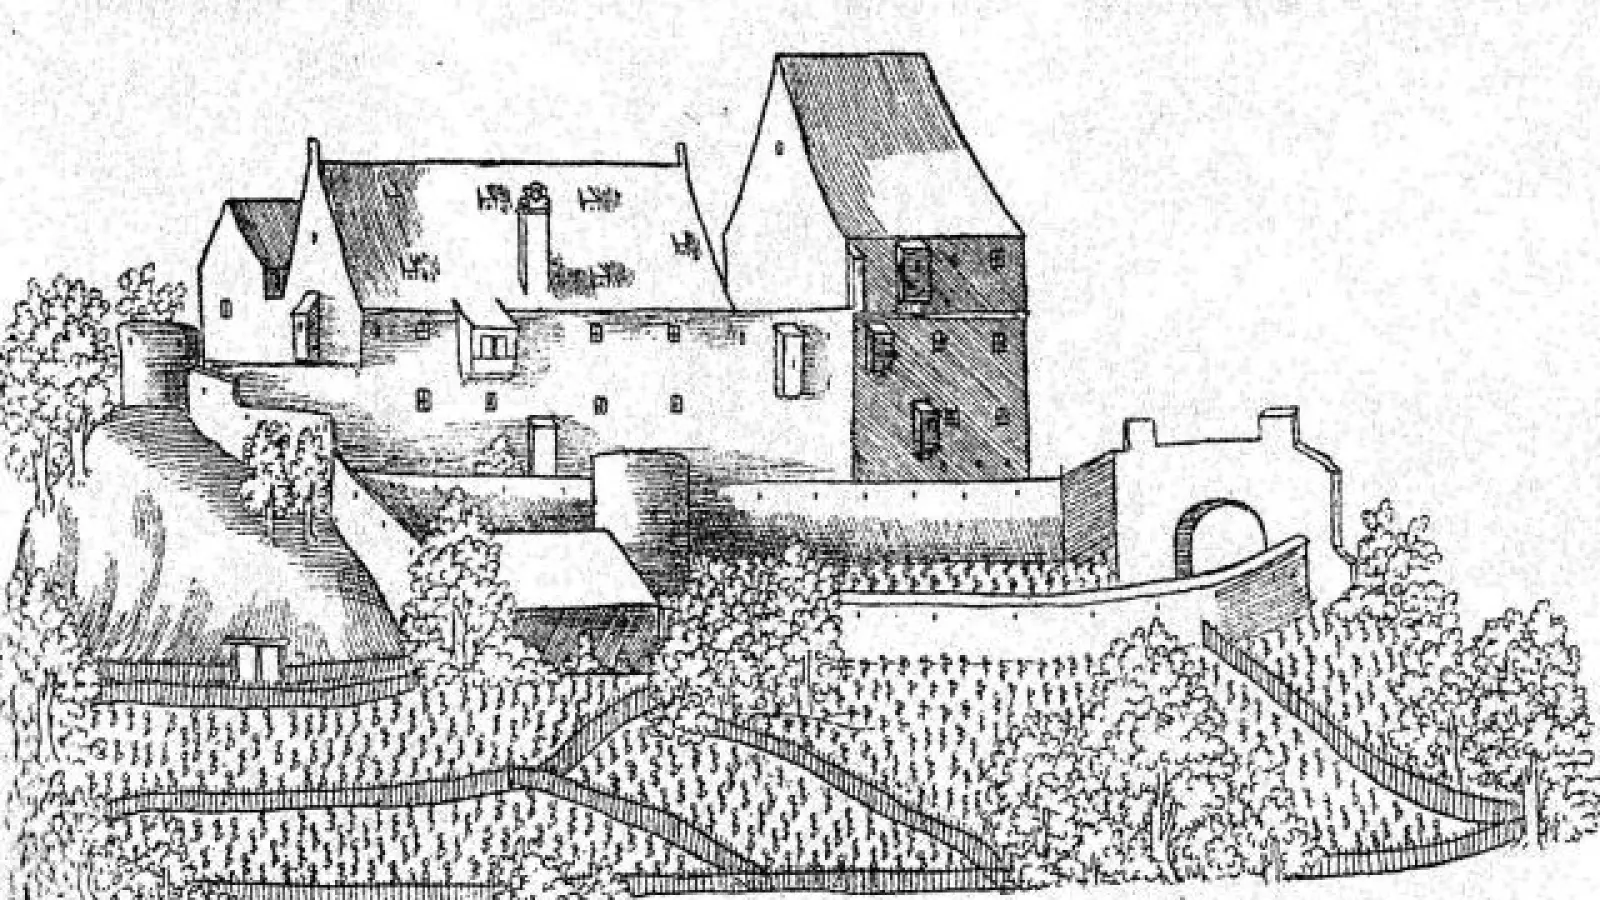 Blicke in die Geschichte des Gumppenbergs: Die Federzeichnung von Philipp Apian aus dem Jahr 1568 gibt einen Eindruck von der mittelalterlichen Burg. (Gumppenbergs: Die Federzeichnung von Philipp Apian aus dem Jahr 1568 gibt einen Eindruck von der mittelalterlichen Burg.)